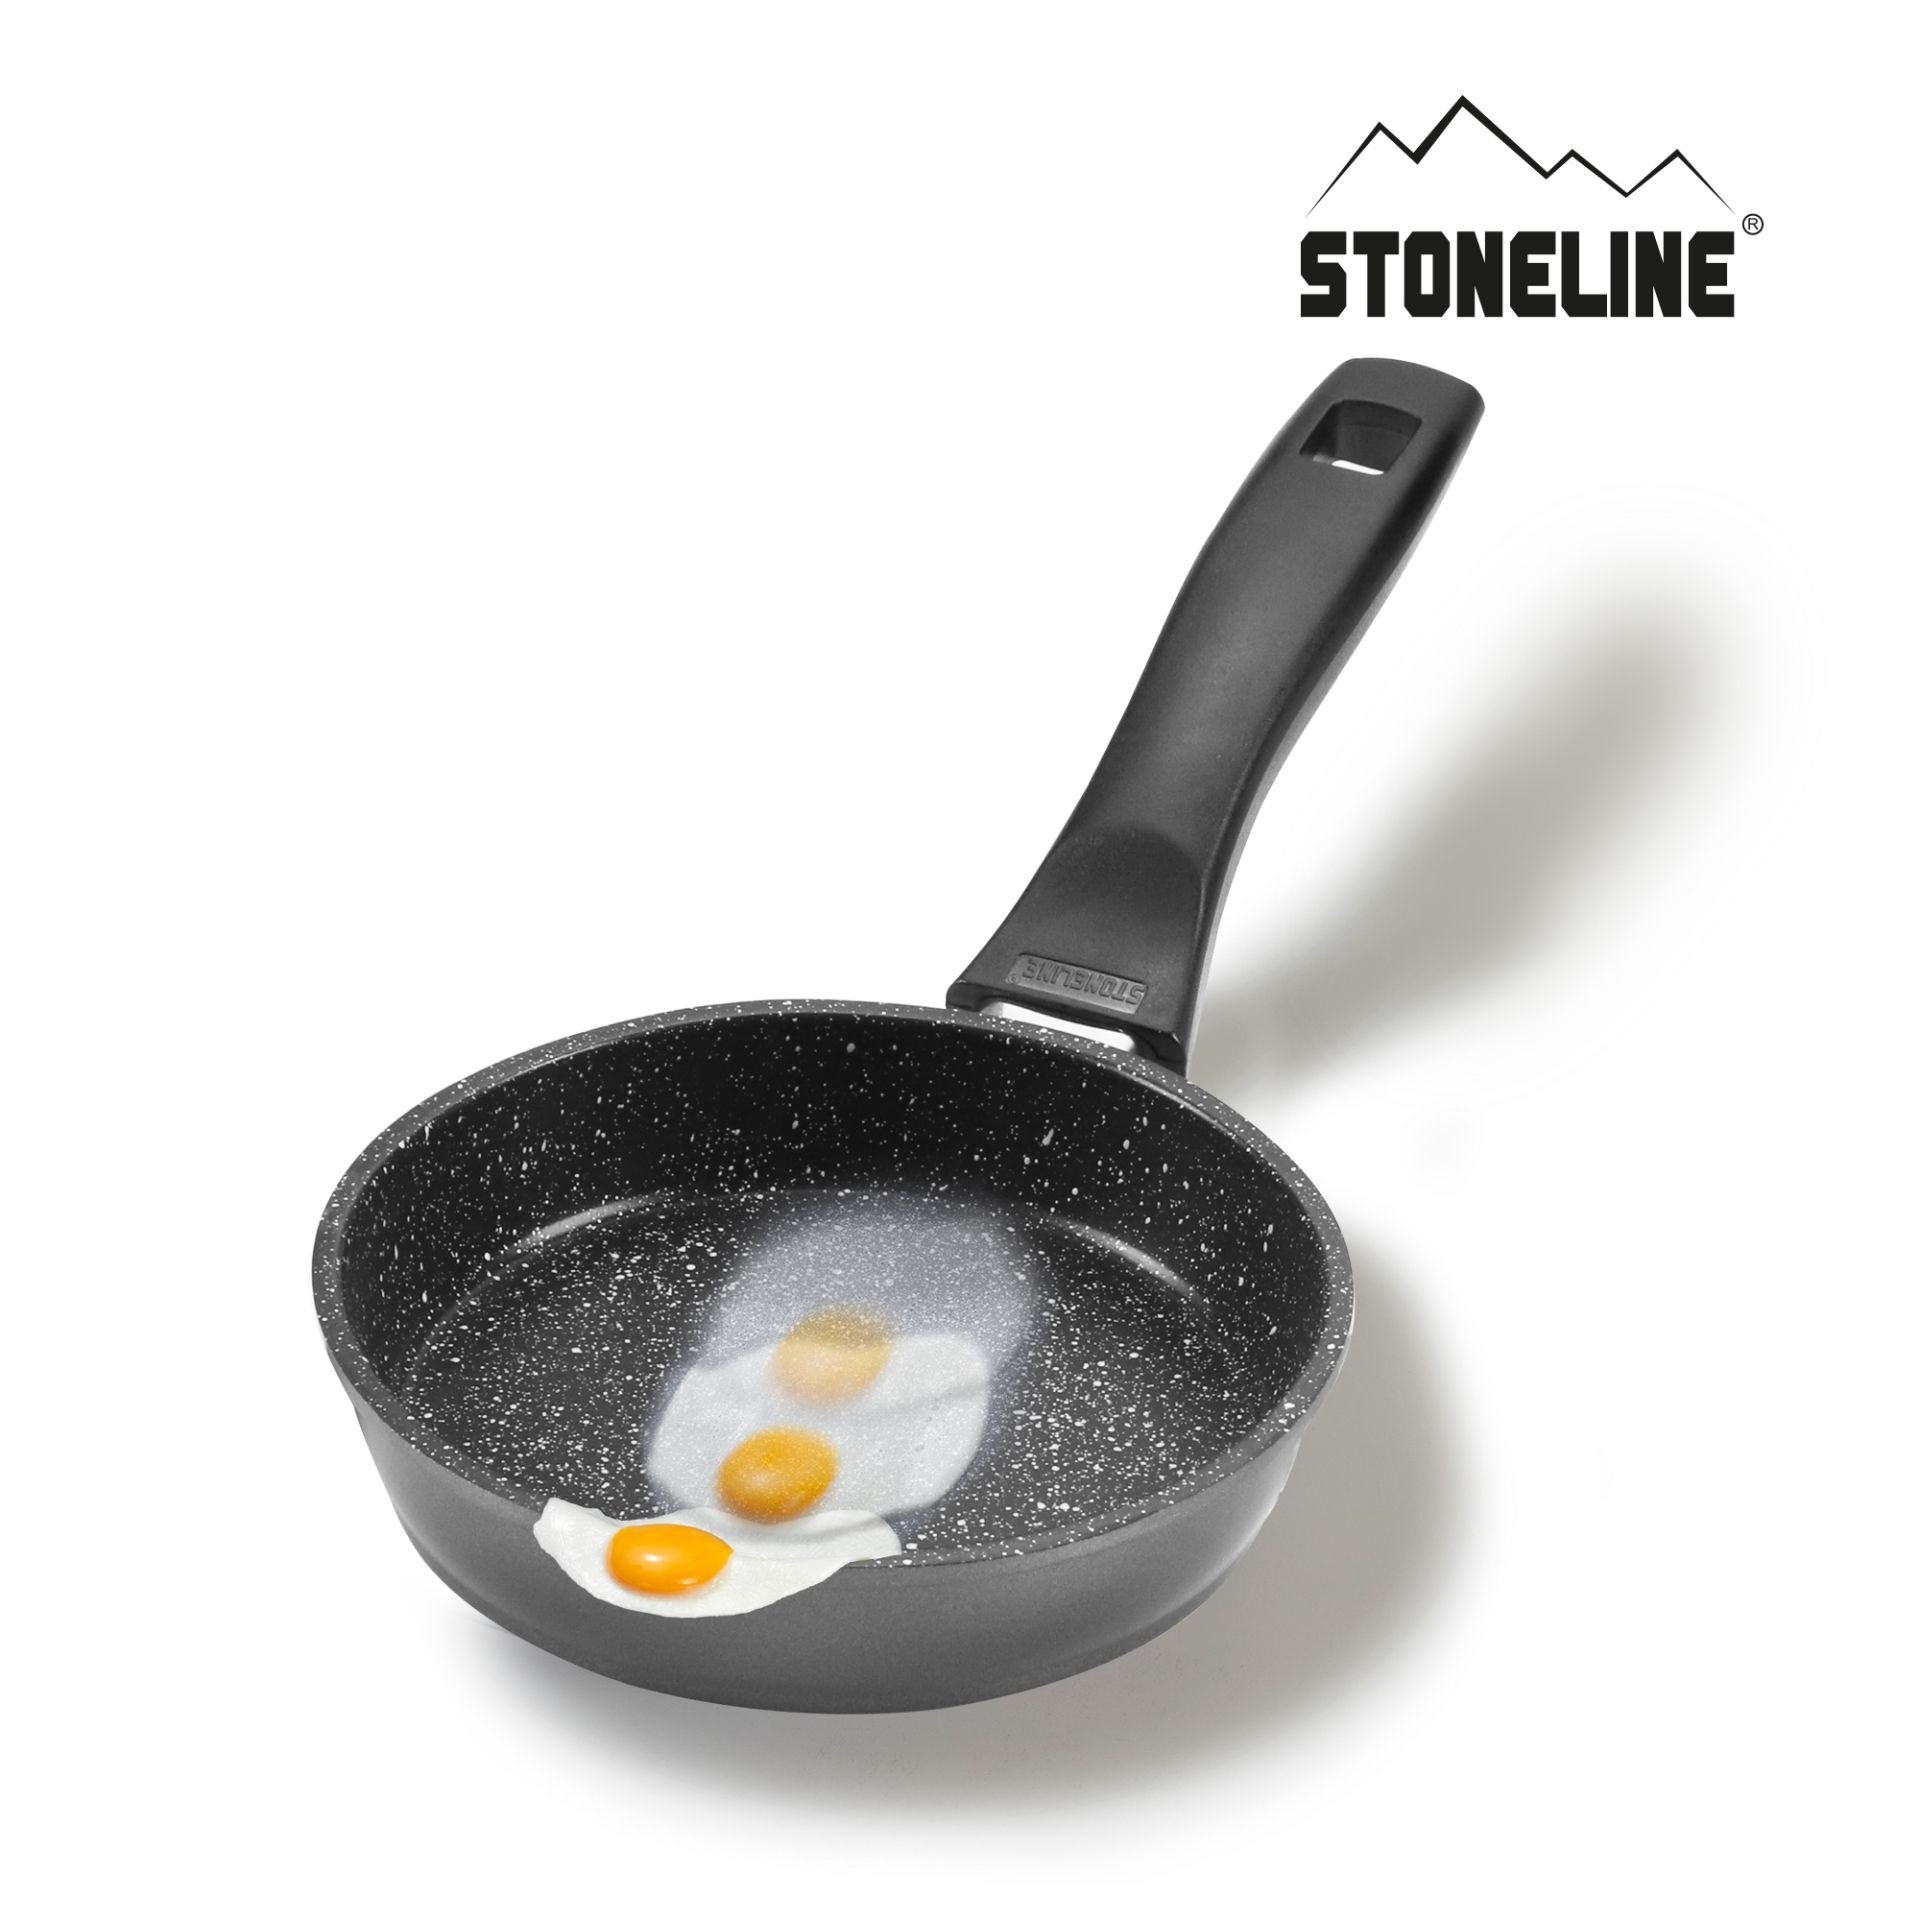 STONELINE® sartén 14 cm, sartén antiadherente para tortillas, apta para horno e inducción